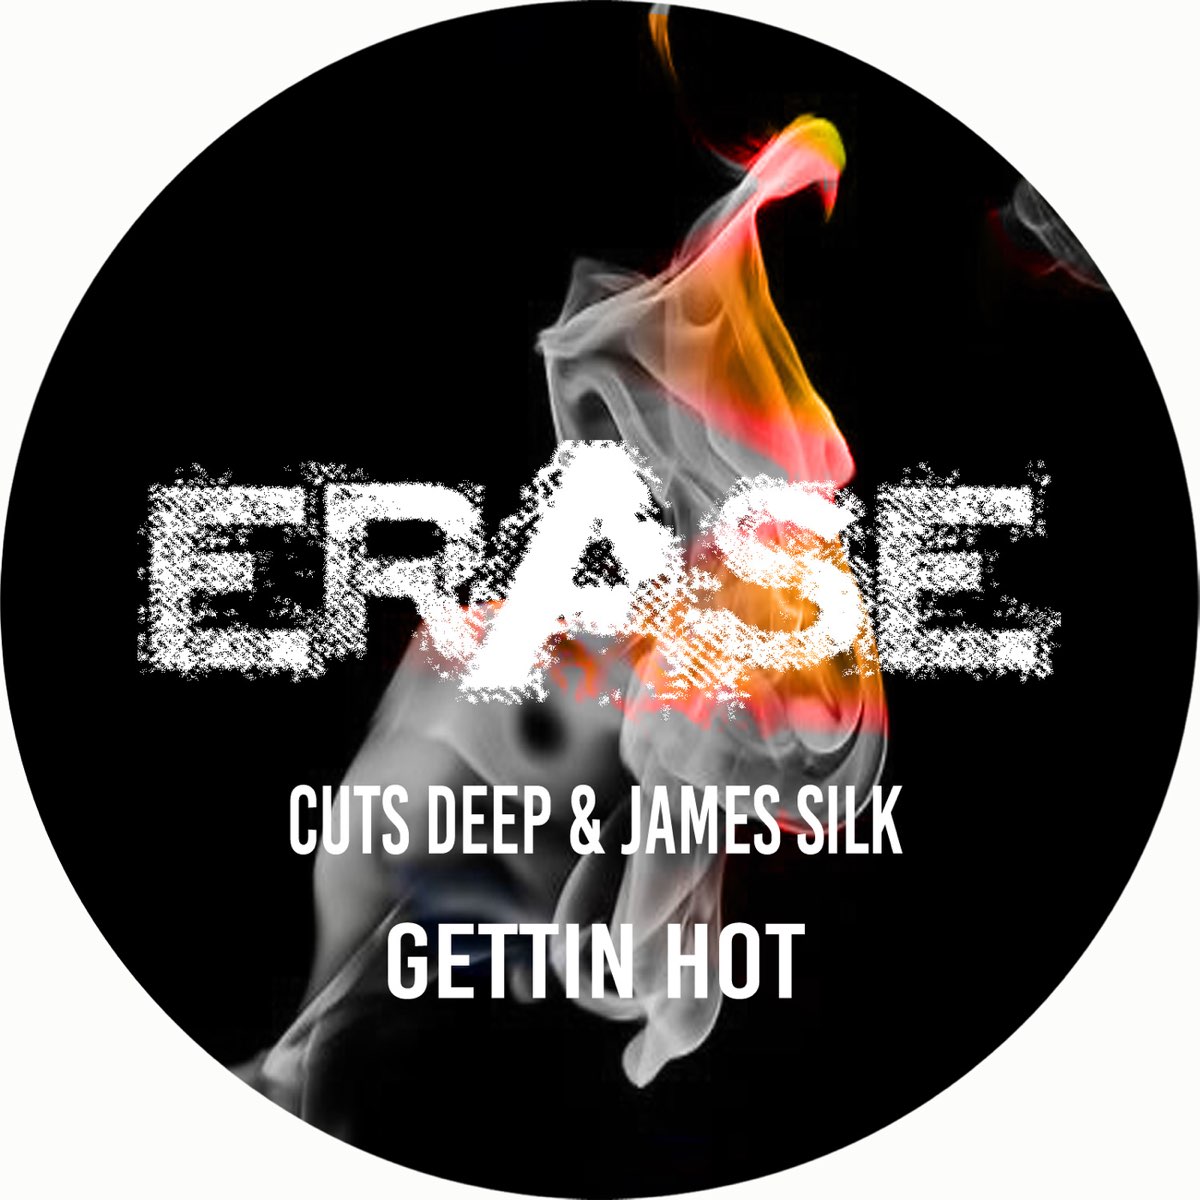 Hot original mix. James_Deep_. Gettin' hot (Original Mix) Black Legend – Gettin' hot релиз картинка. Deep Cut Music. The Knife Deep Cuts.